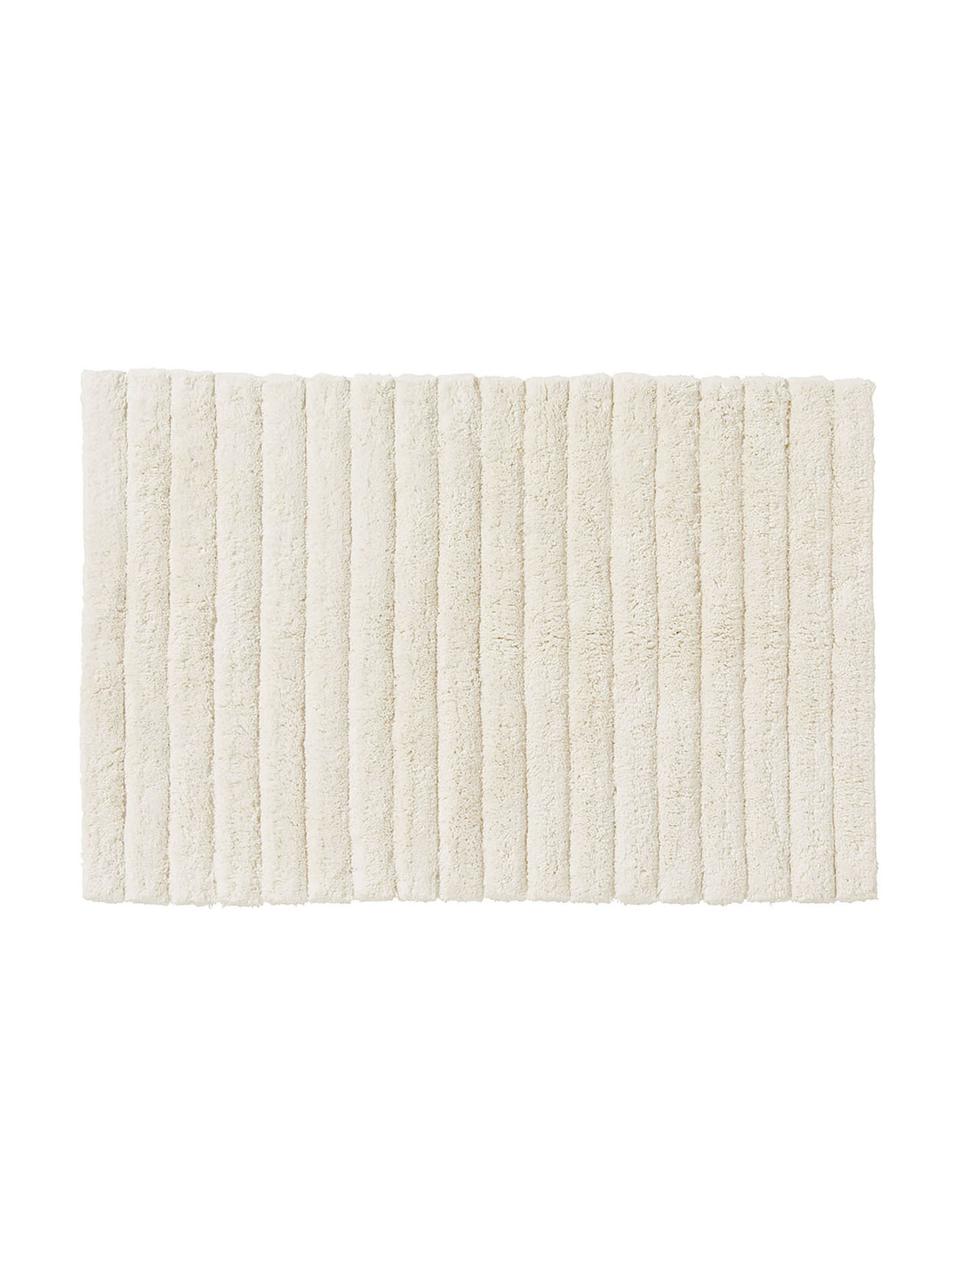 Tappeto bagno morbido bianco crema Board, Cotone, qualità pesante 1900 g/m², Bianco crema, Larg. 50 x Lung. 60 cm